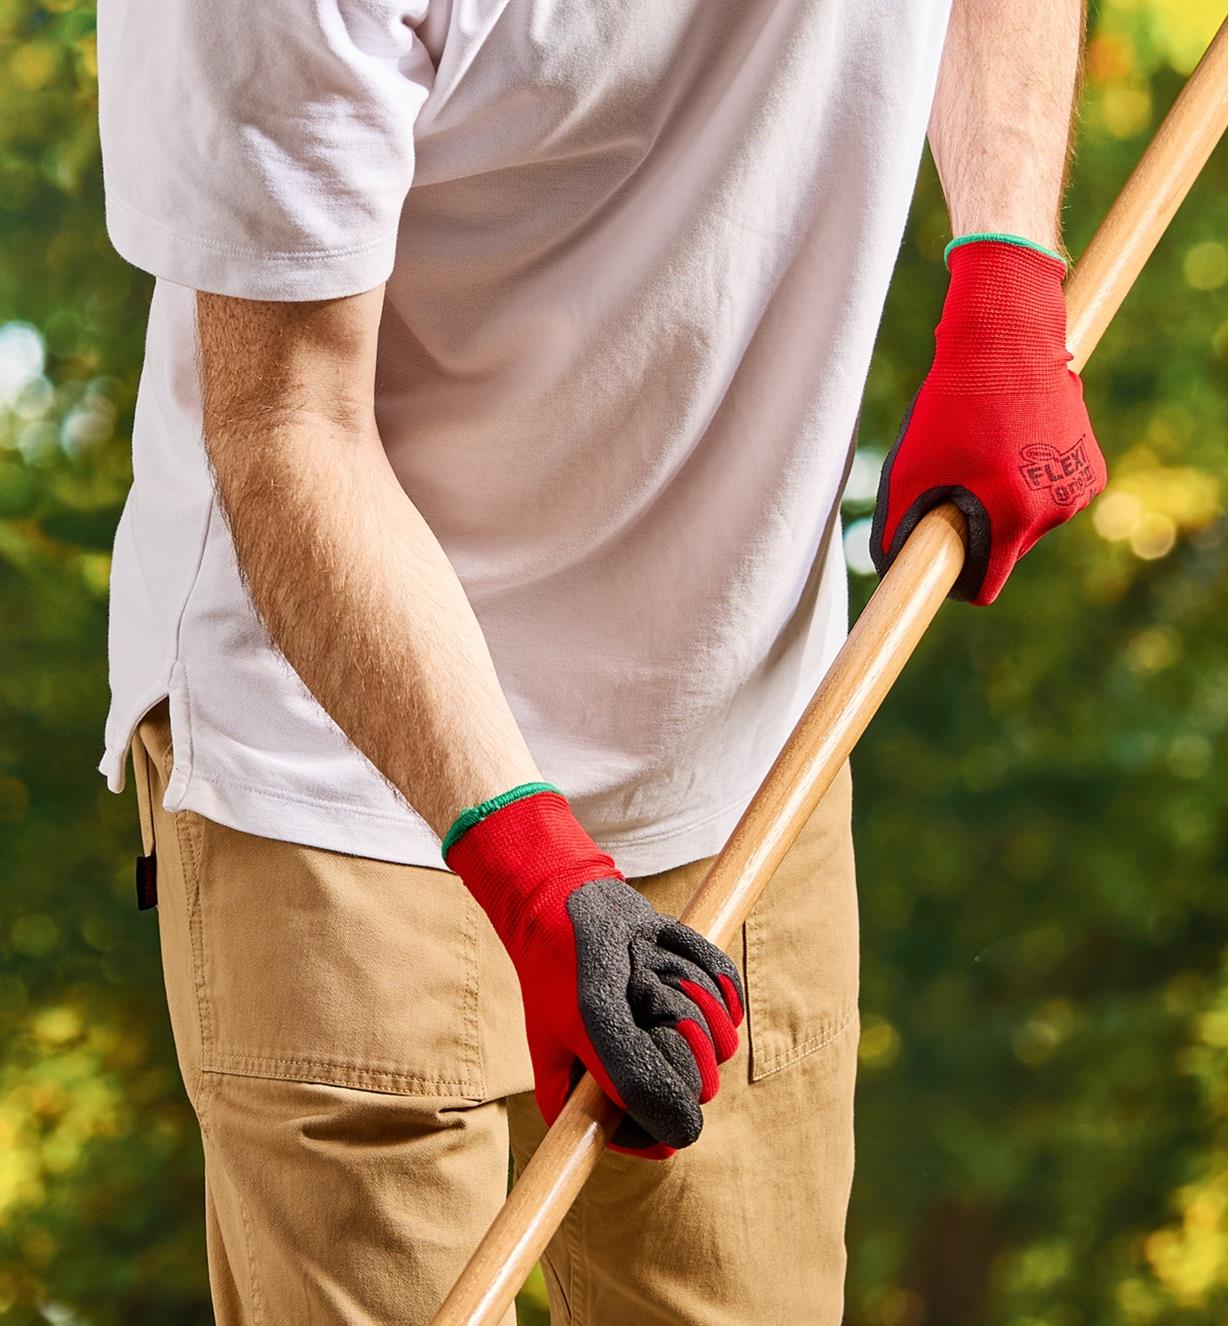 A man wears Flex Grip gloves while raking